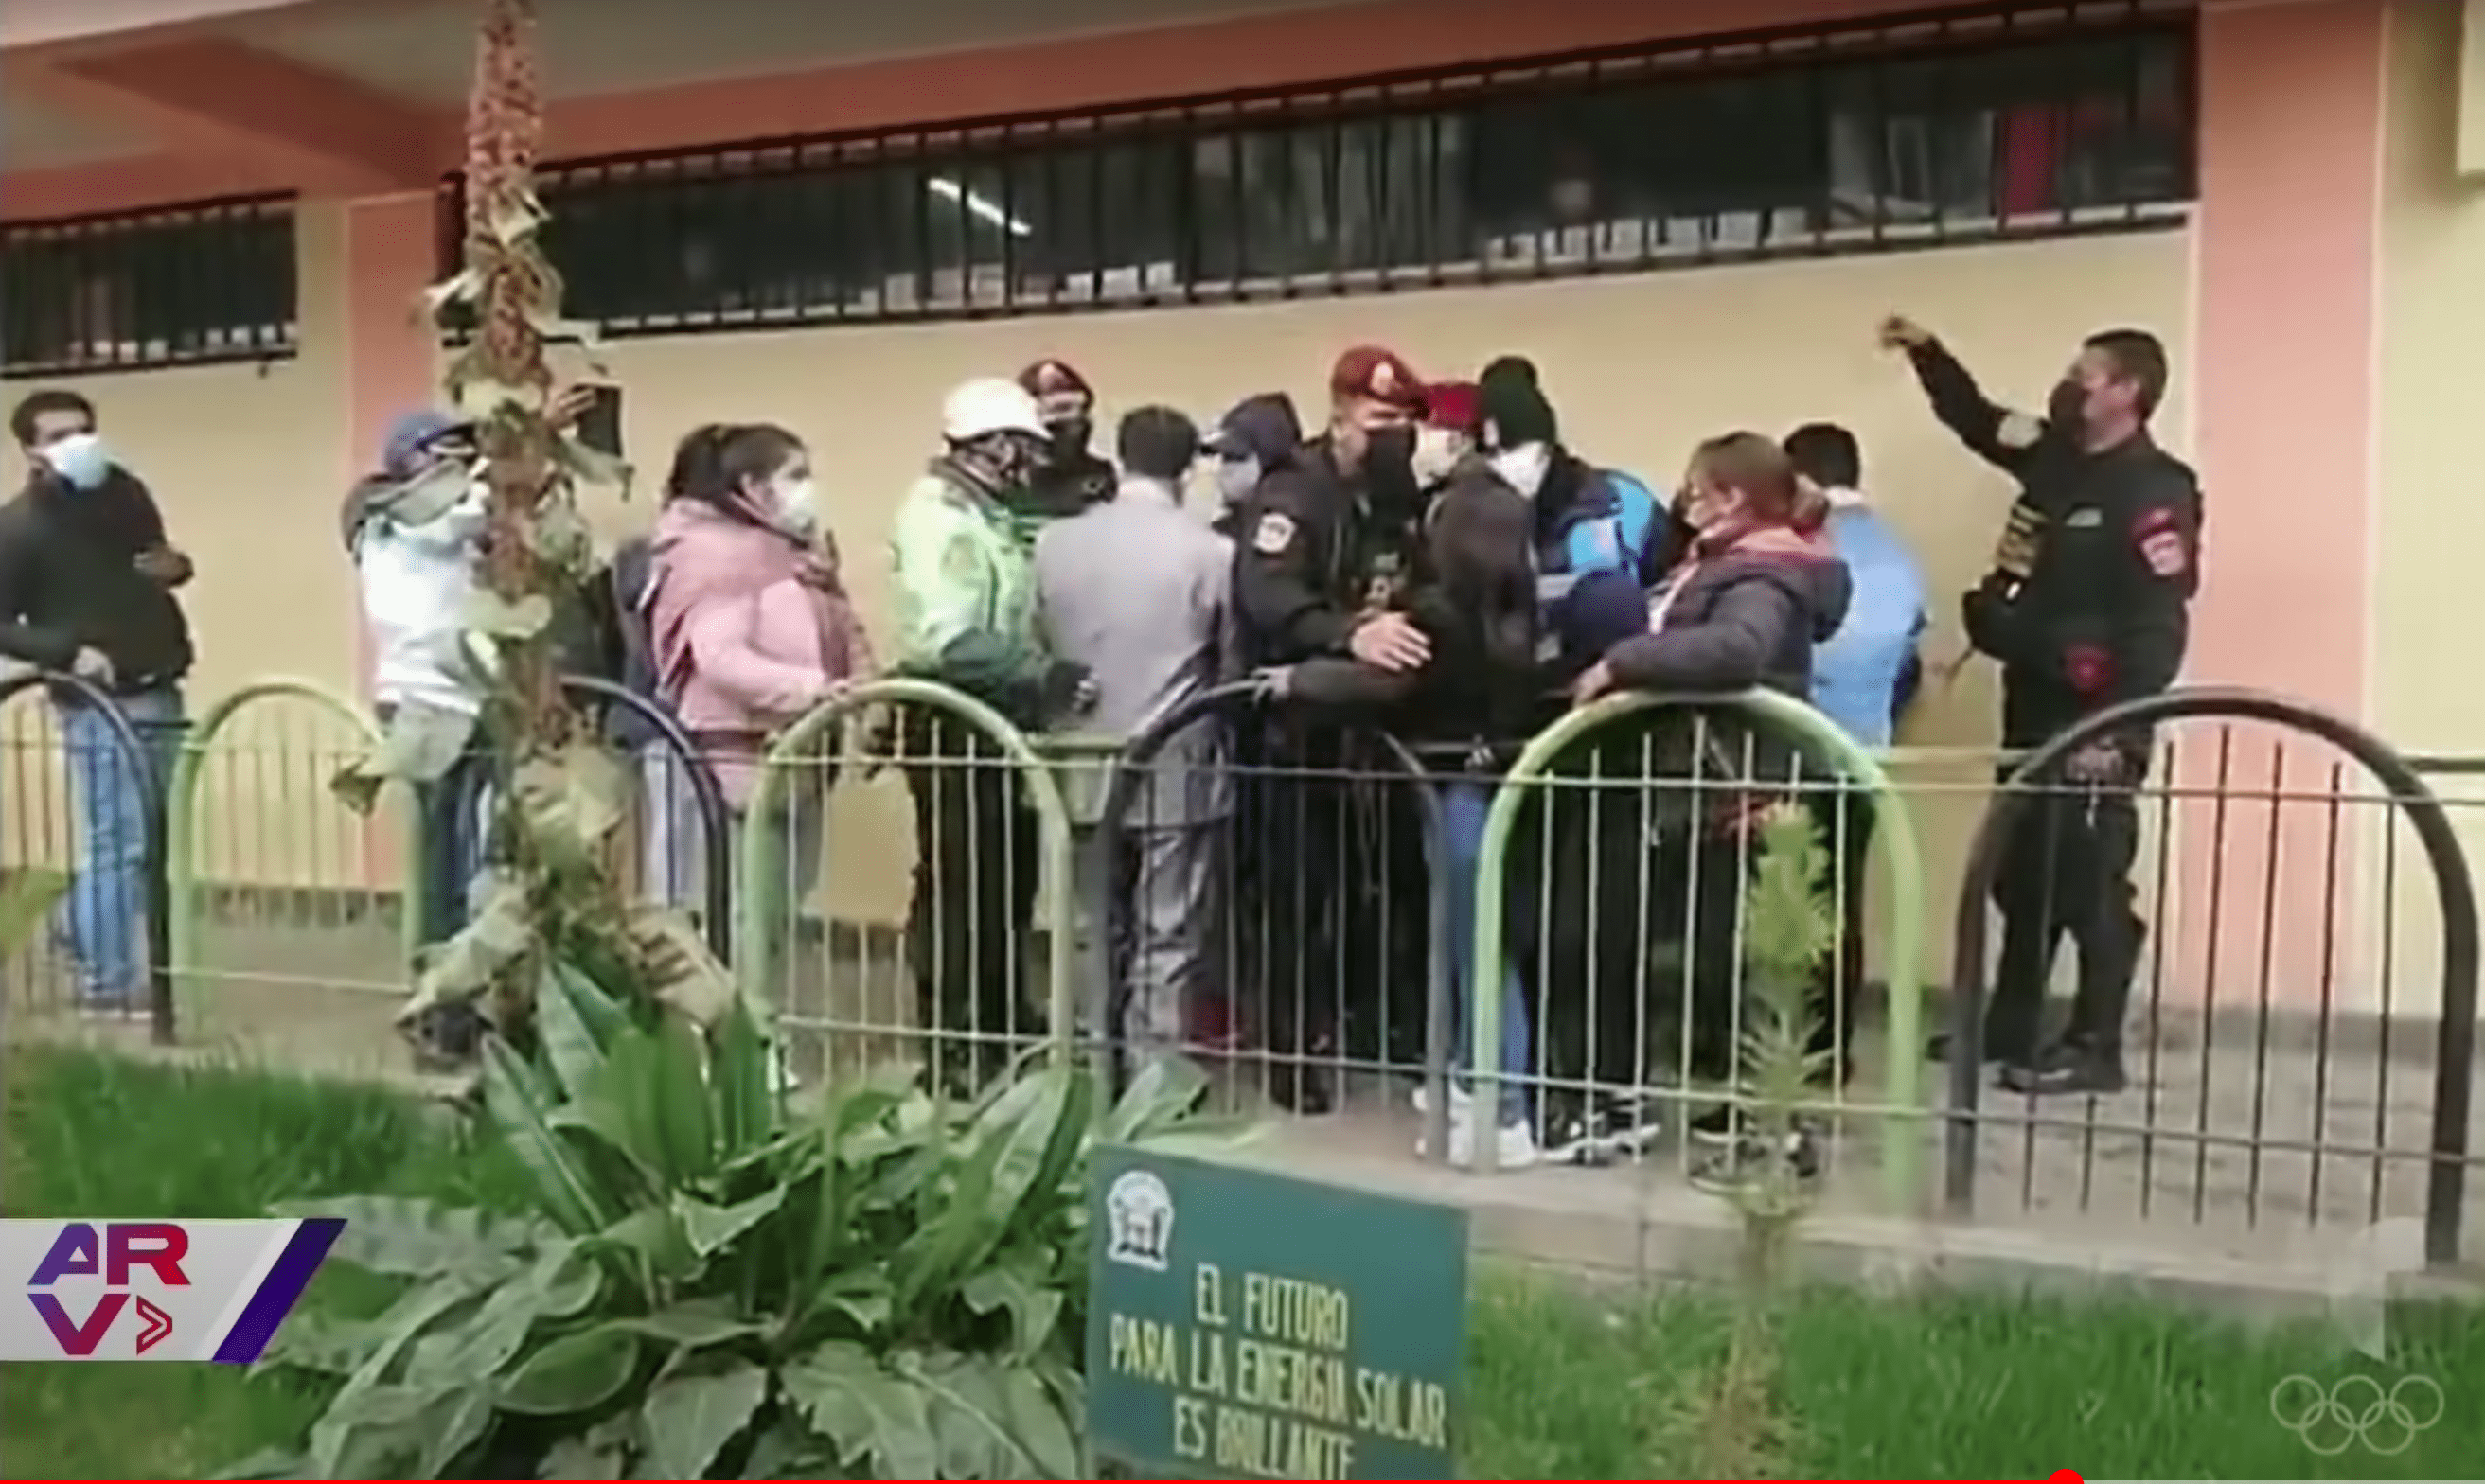 L'agitation à l'extérieur de la salle municipale. | Source : Youtube.com/Al Rojo Vivo